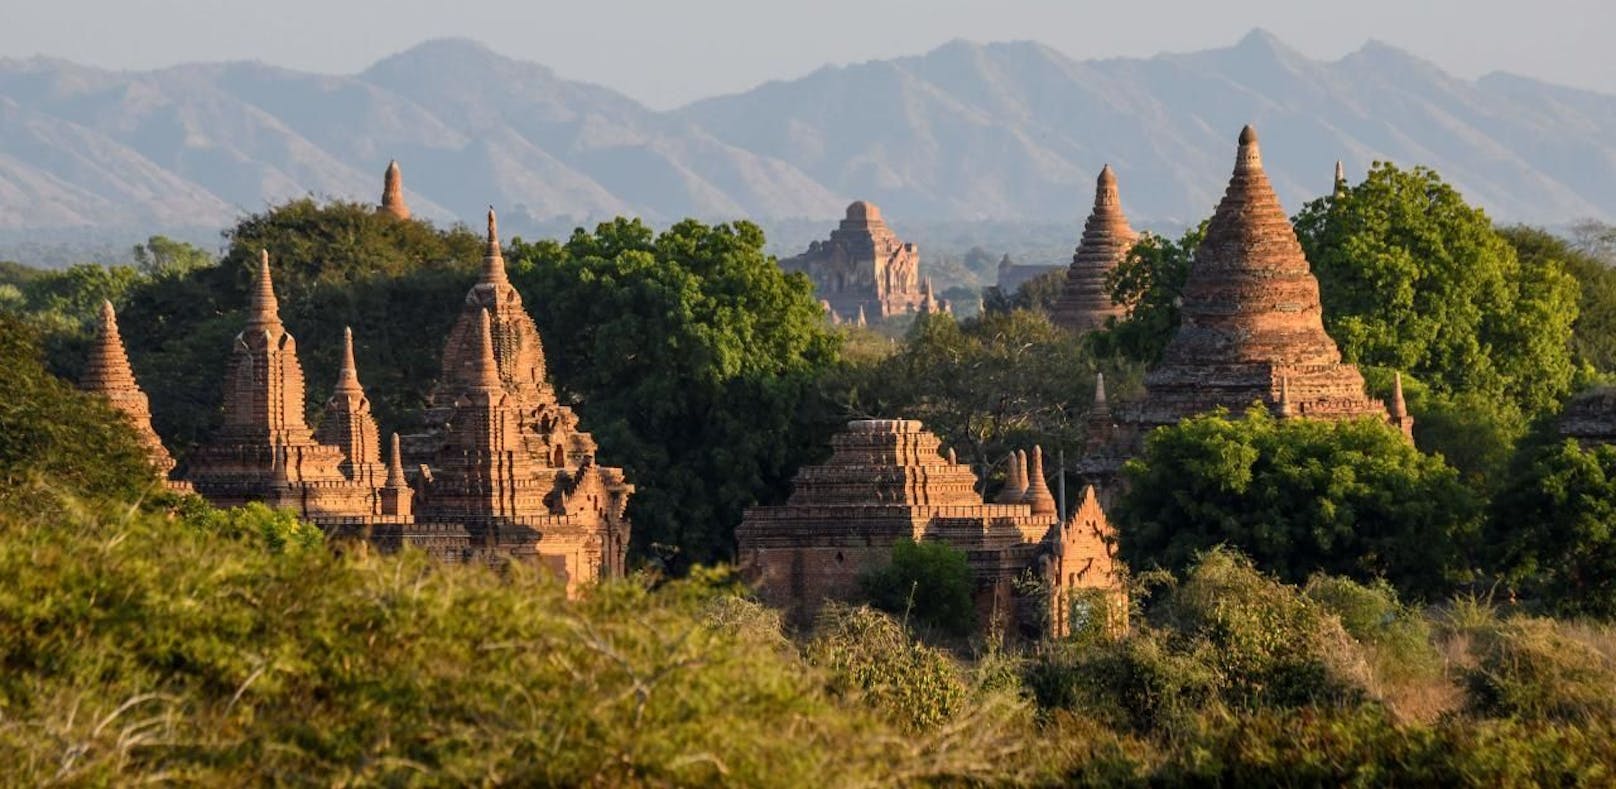 Das Touristenpaar vergnügte sich in einer Tempelanlage in Myanmar